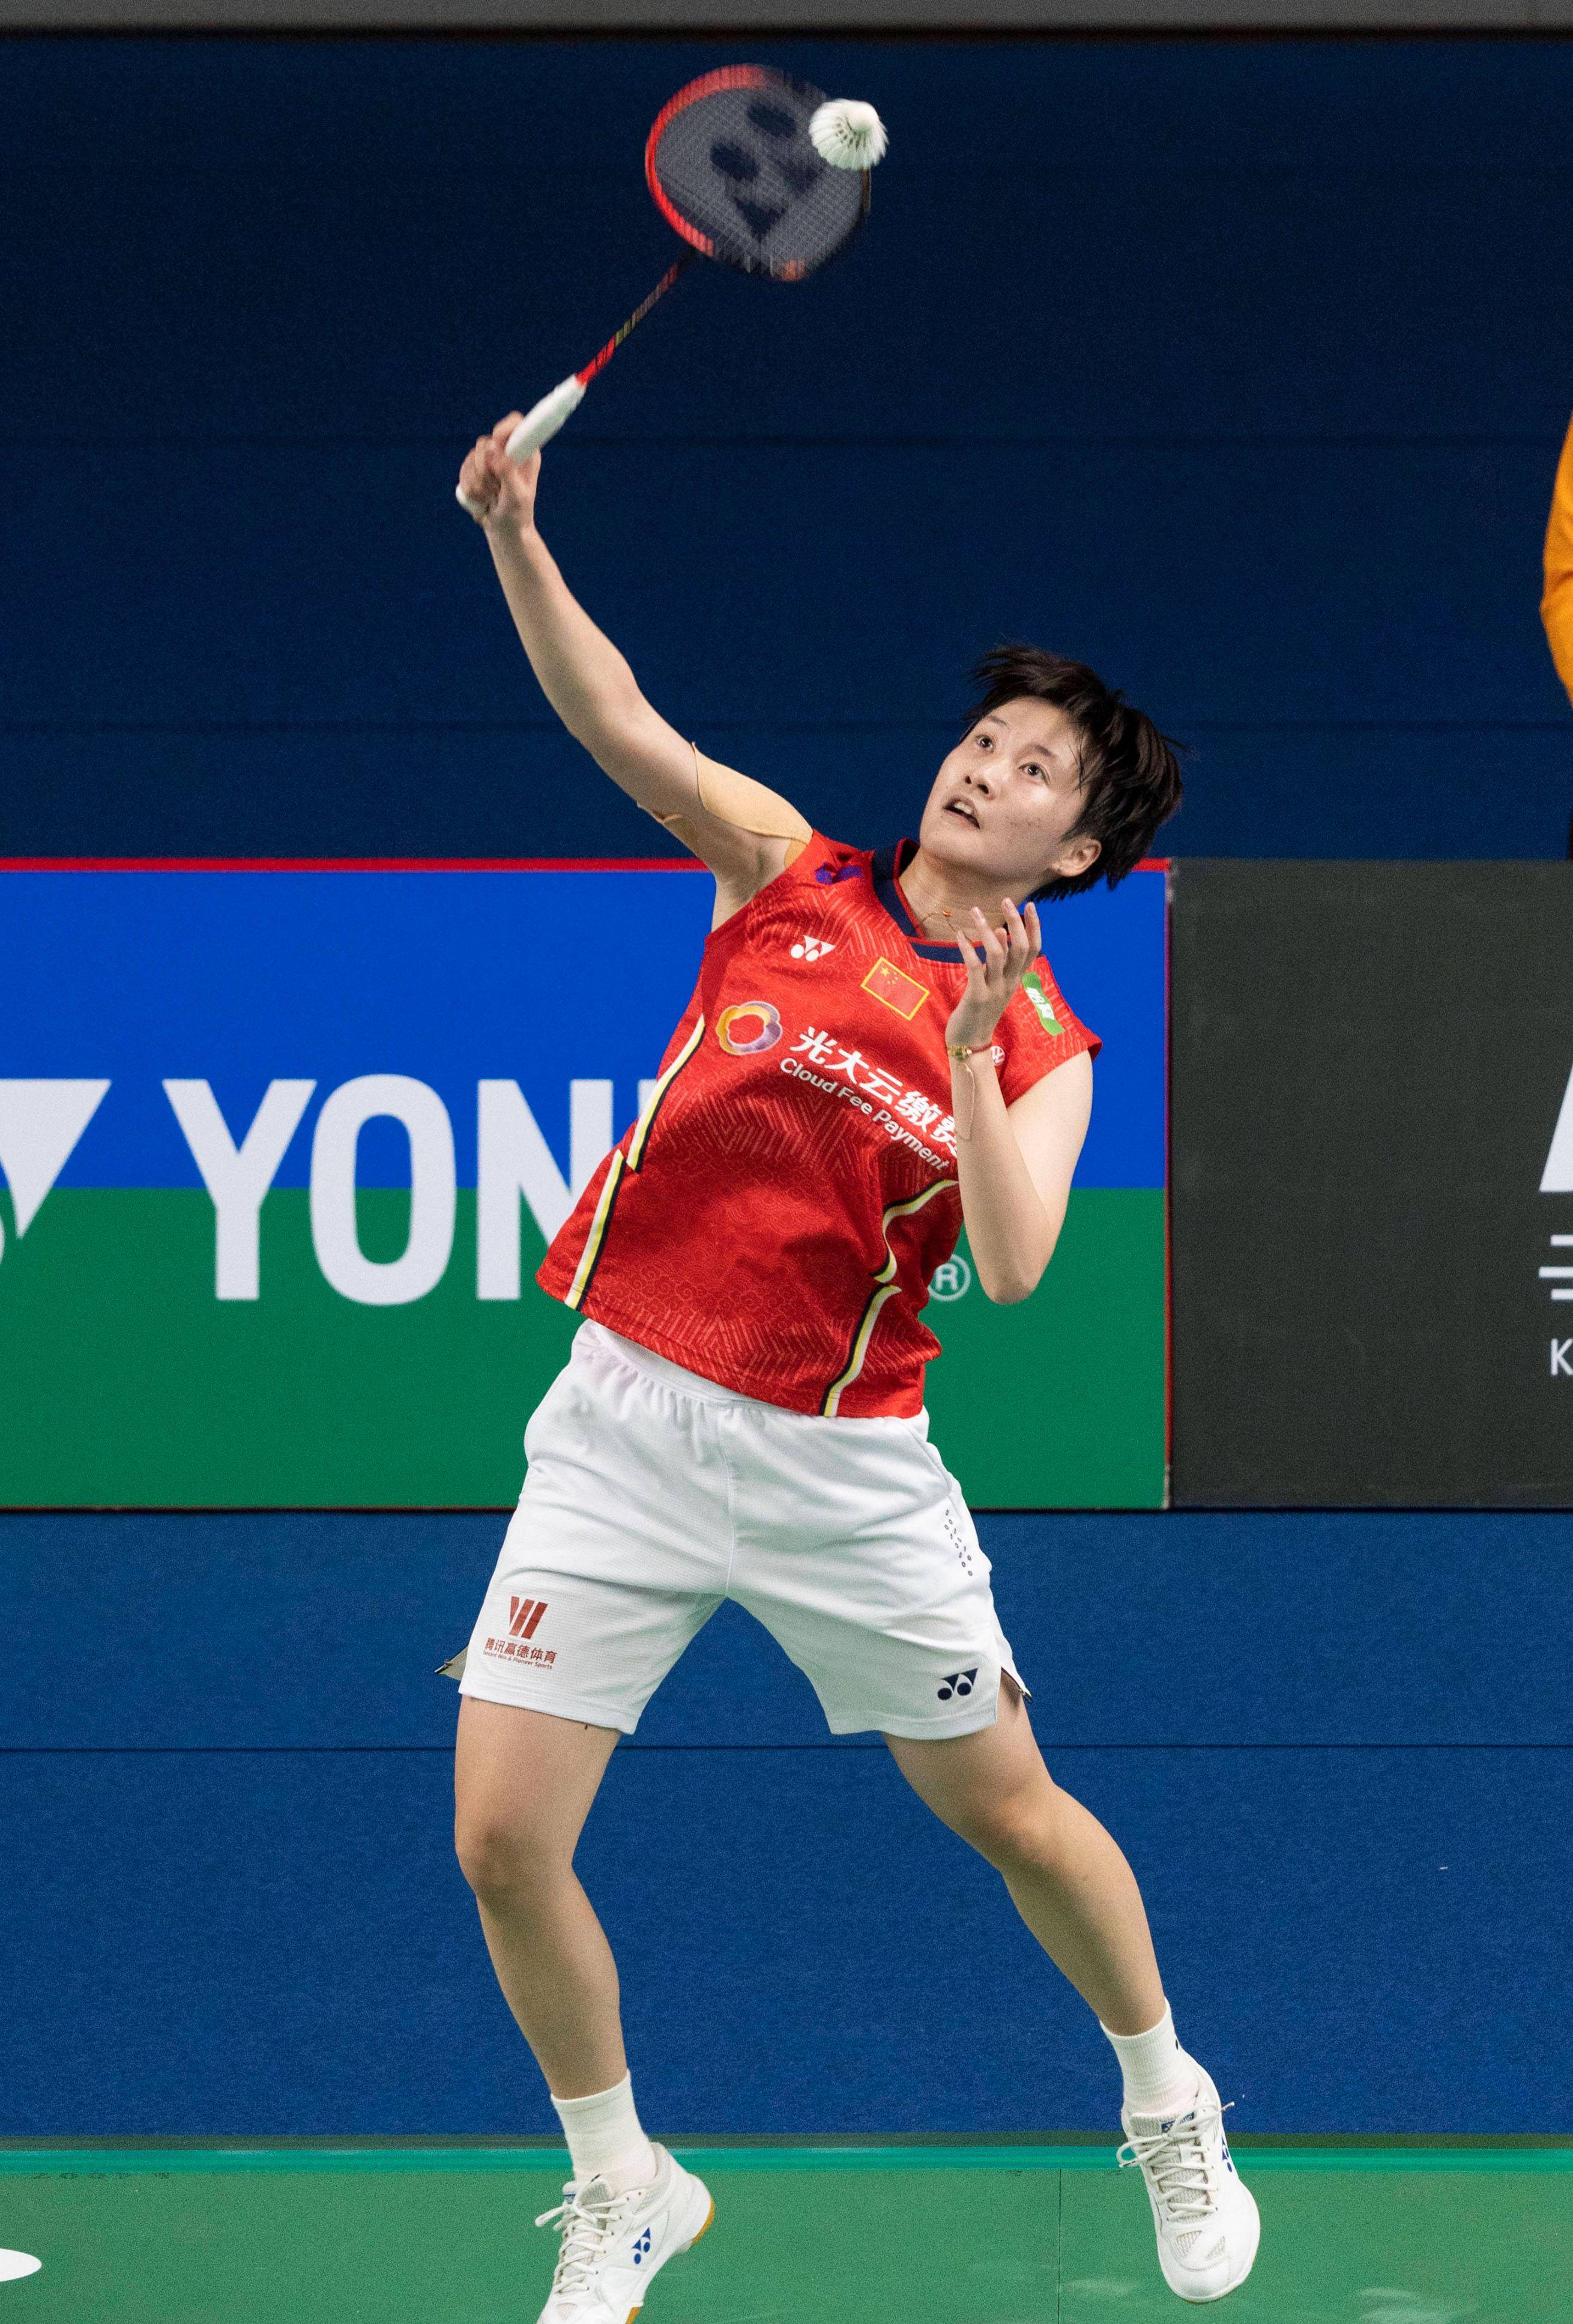 陈雨菲是中国羽毛球运动员,世界冠军,没有男朋友,当然也就没有结婚